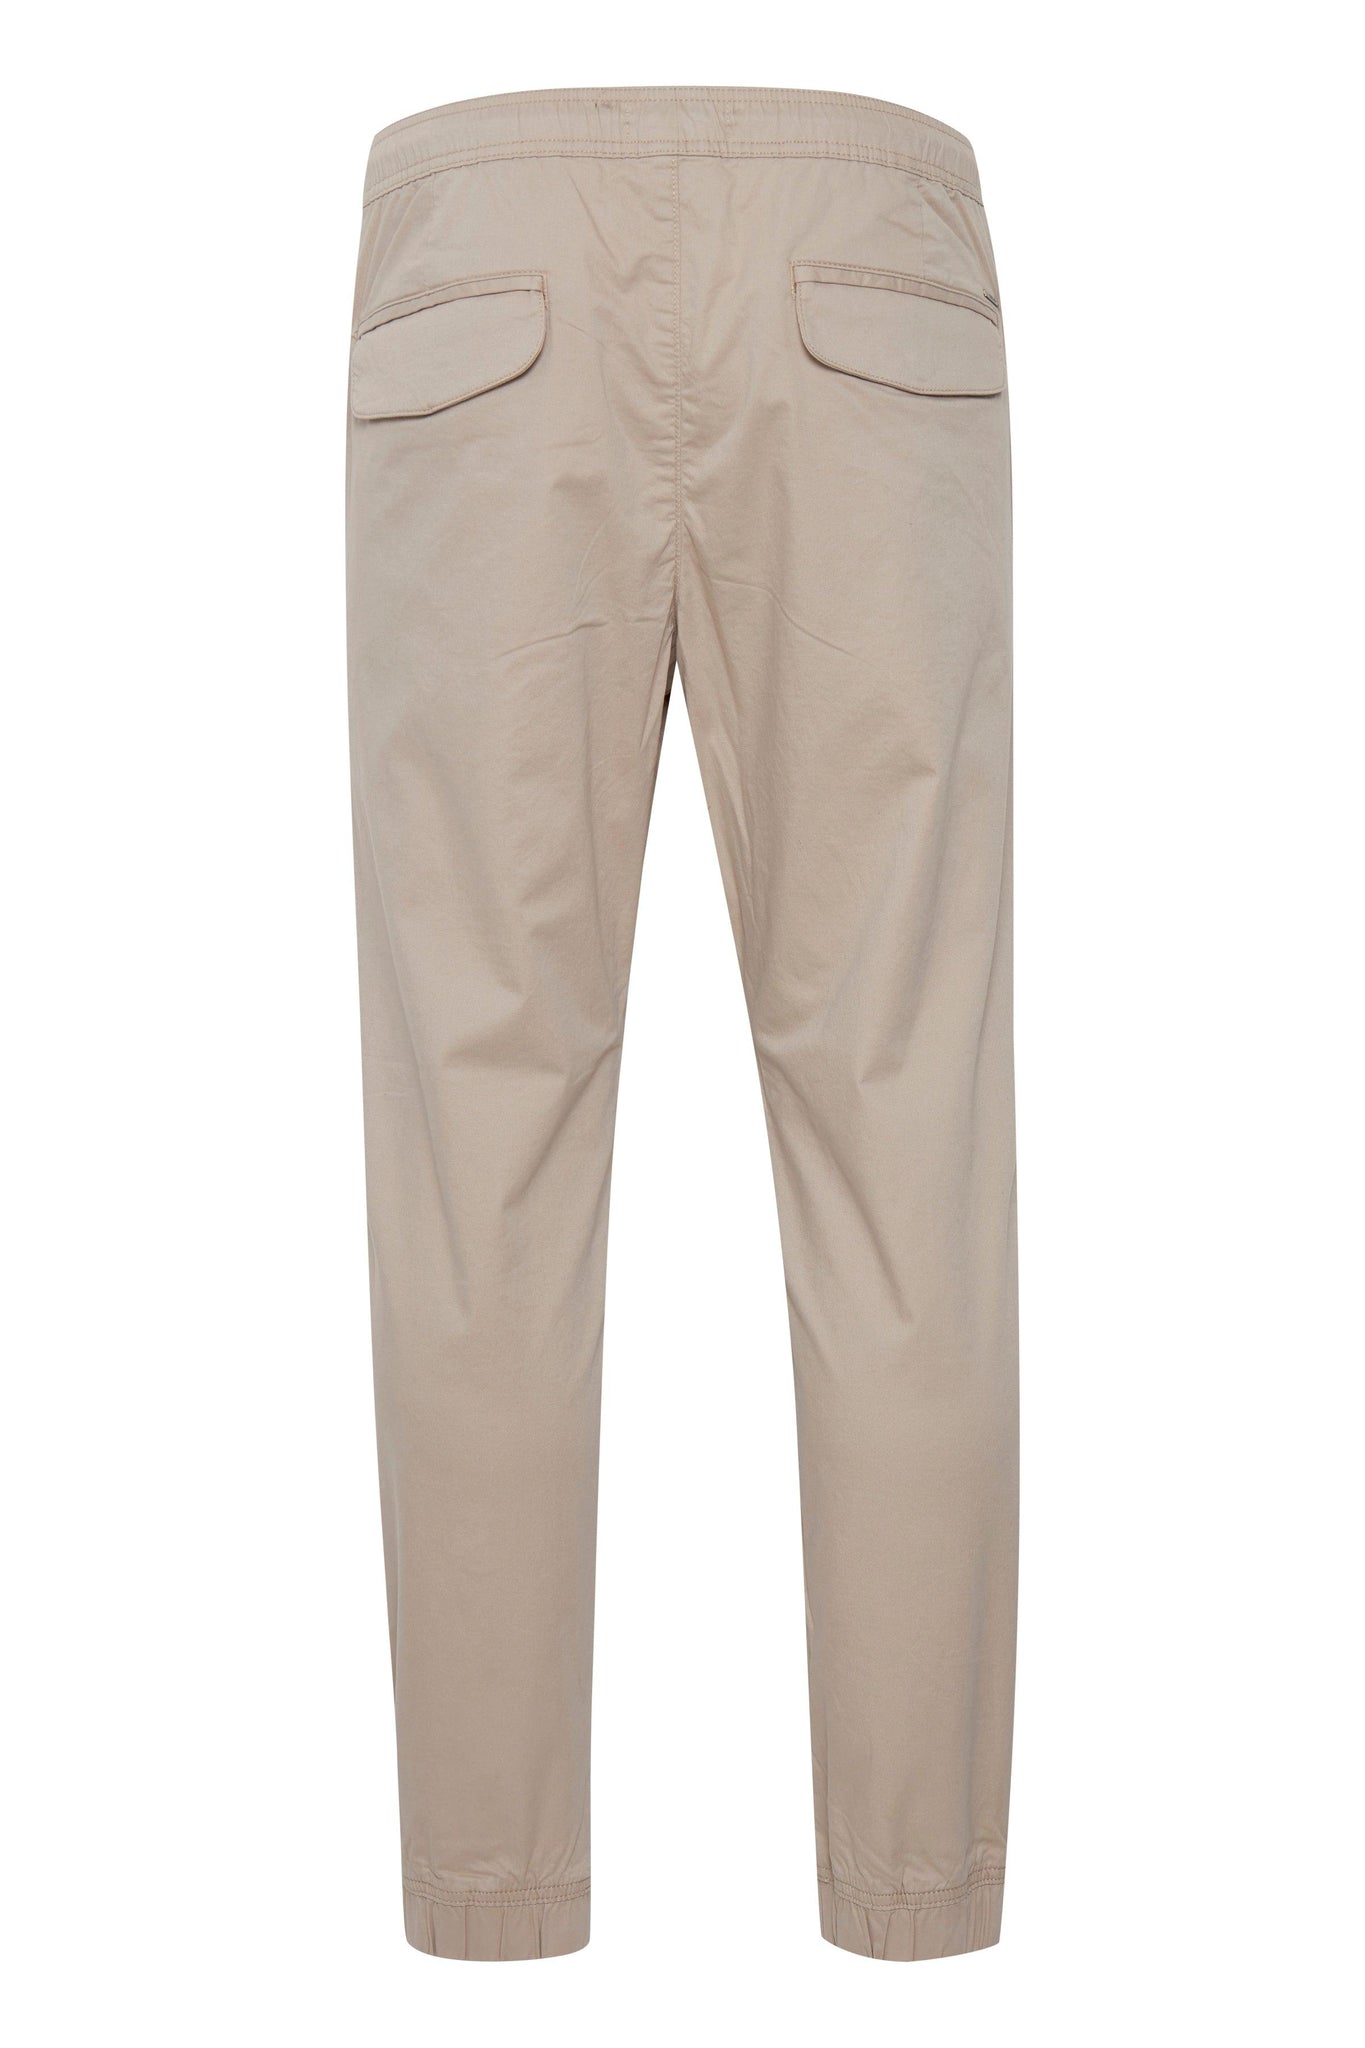 Pantalones Slim-Truc Cuff Simple Taupe - ECRU